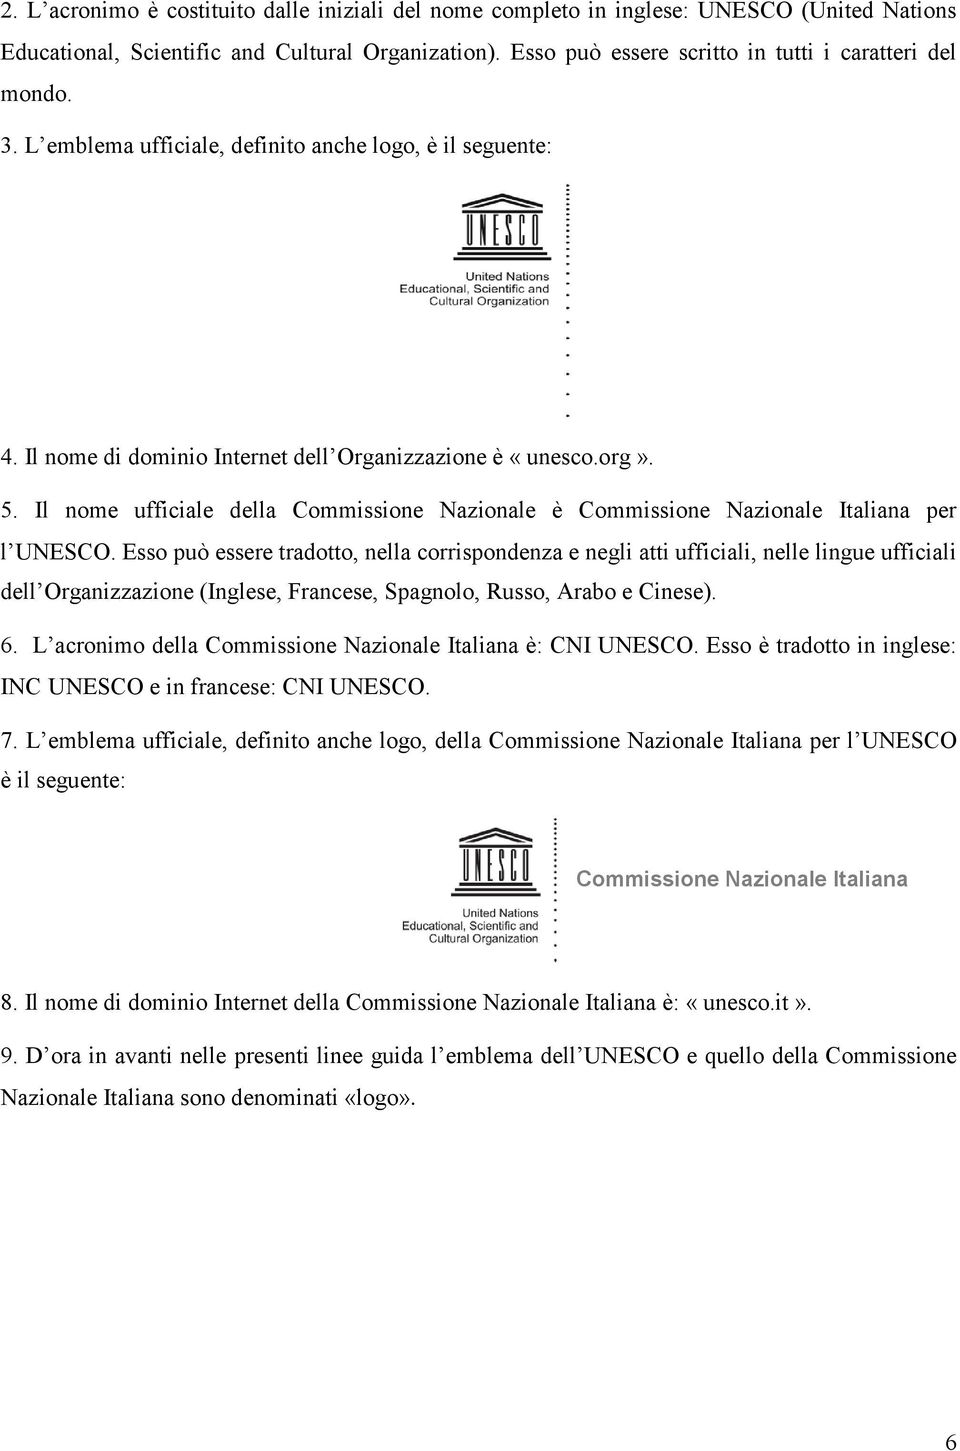 Il nome ufficiale della Commissione Nazionale è Commissione Nazionale Italiana per l UNESCO.